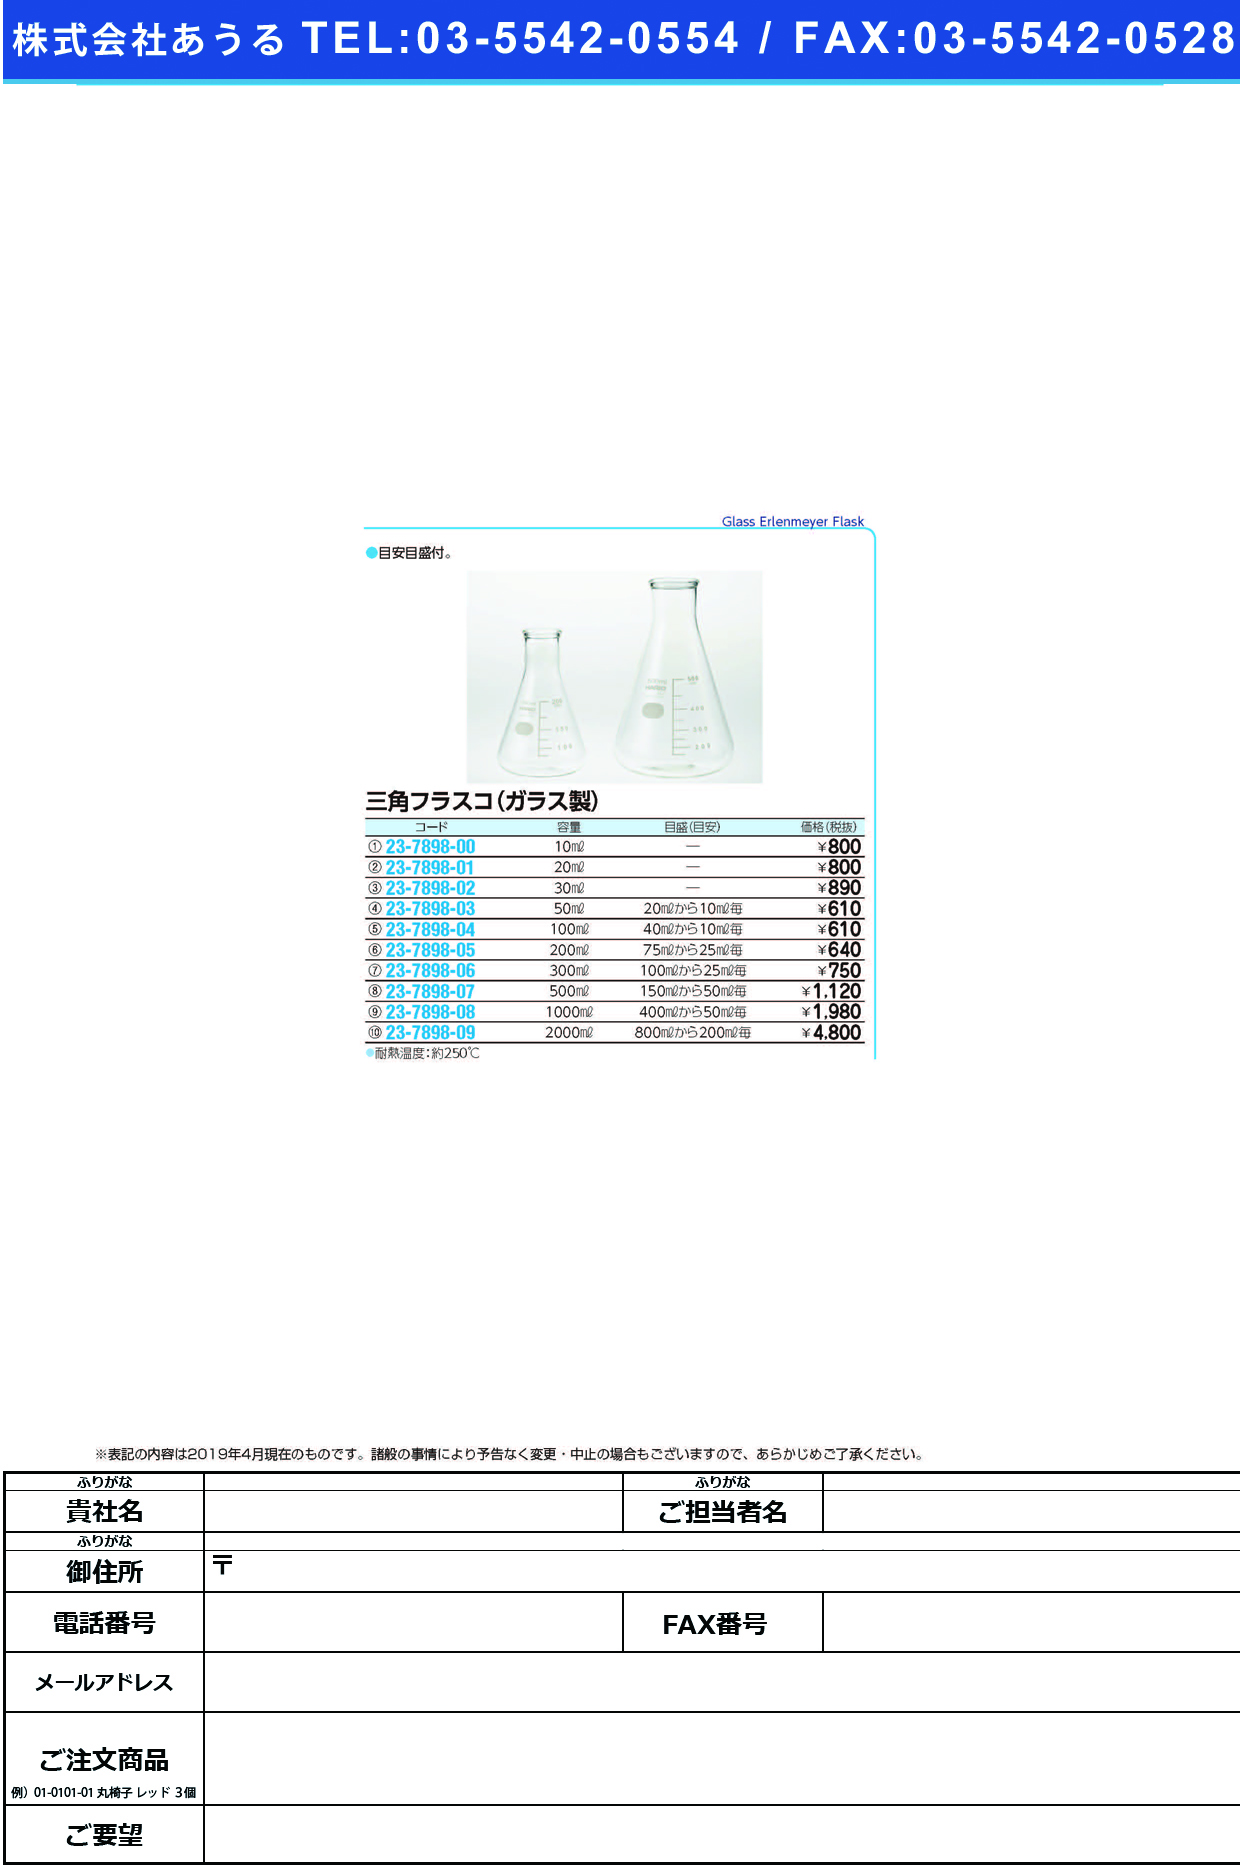 (23-7898-05)三角フラスコ（ガラス製） 200ML ｻﾝｶｸﾌﾗｽｺ(ｶﾞﾗｽｾｲ)【1個単位】【2019年カタログ商品】